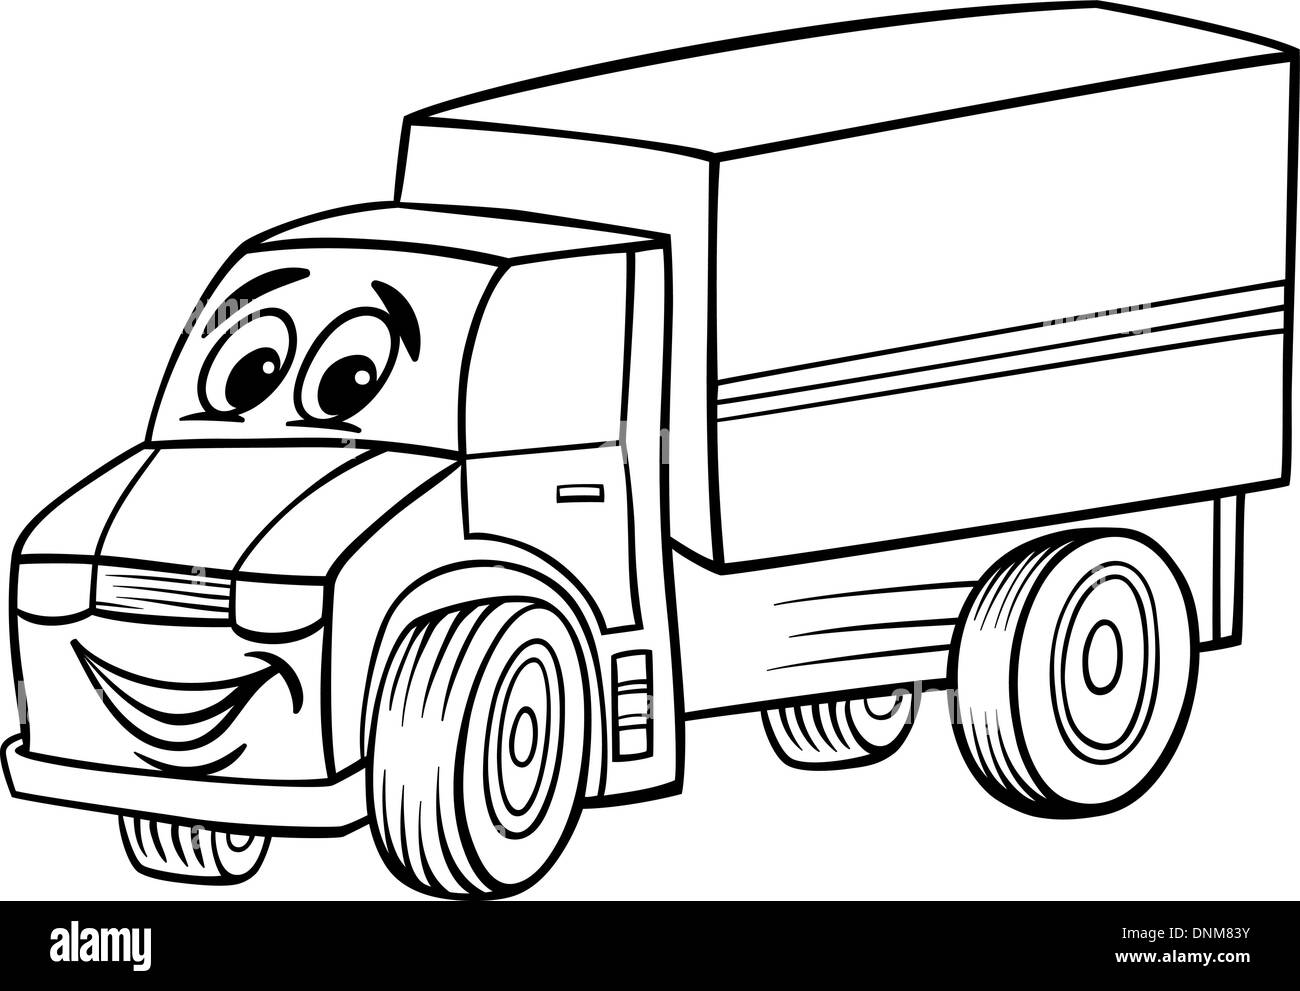 Schwarz Weiss Cartoon Illustration Der Lustige Truck Oder Lkw Auto Fahrzeug Comic Maskottchen Fur Malbuch Fur Kinder Stock Vektorgrafik Alamy